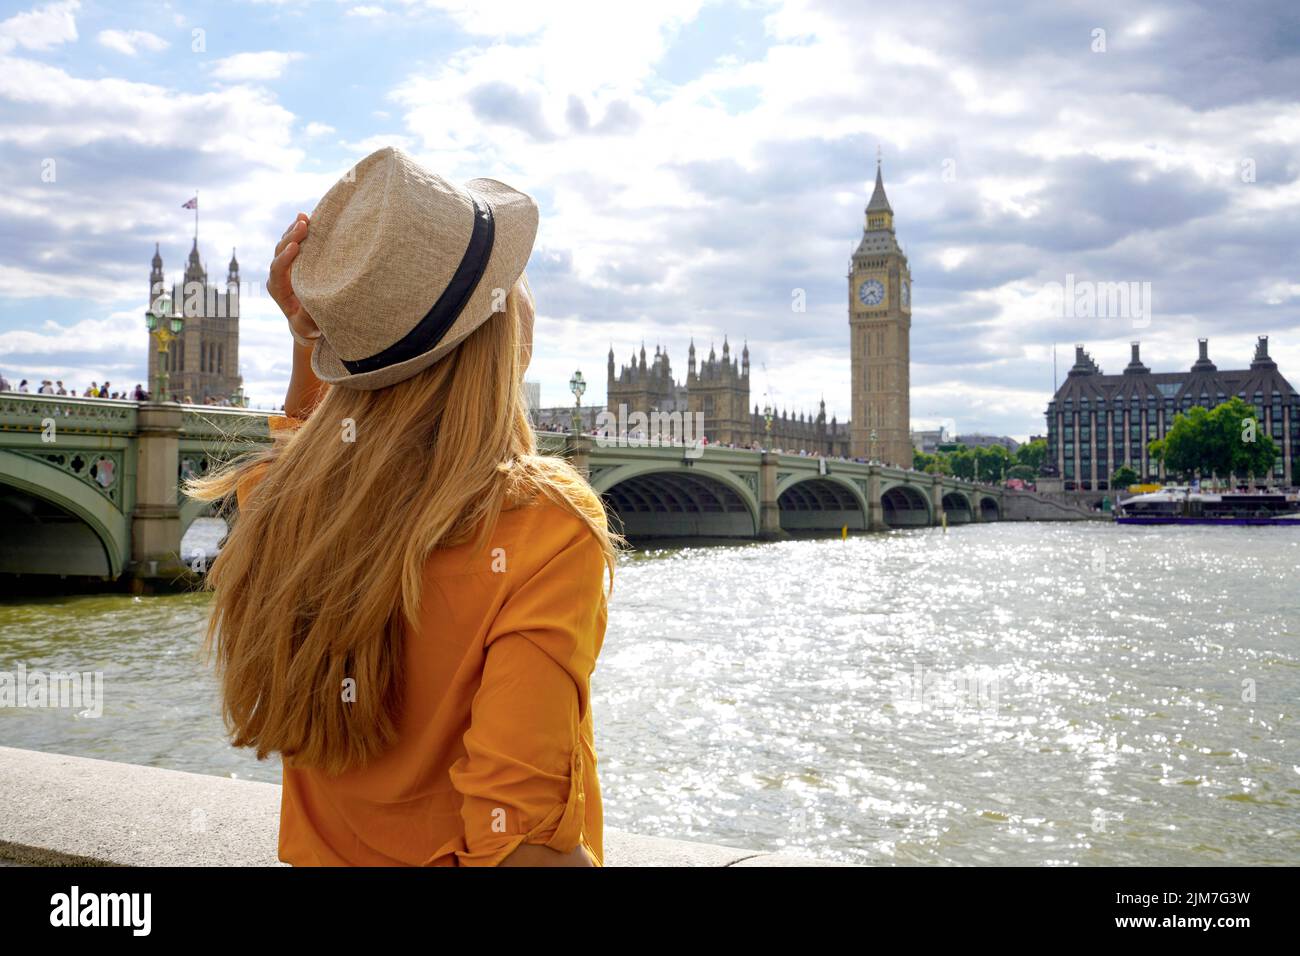 Turismo en Londres. Vista trasera de la chica viajera disfrutando de la vista del puente de Westminster y el palacio en el río Támesis con la famosa torre Big Ben en Londres, Reino Unido. Foto de stock